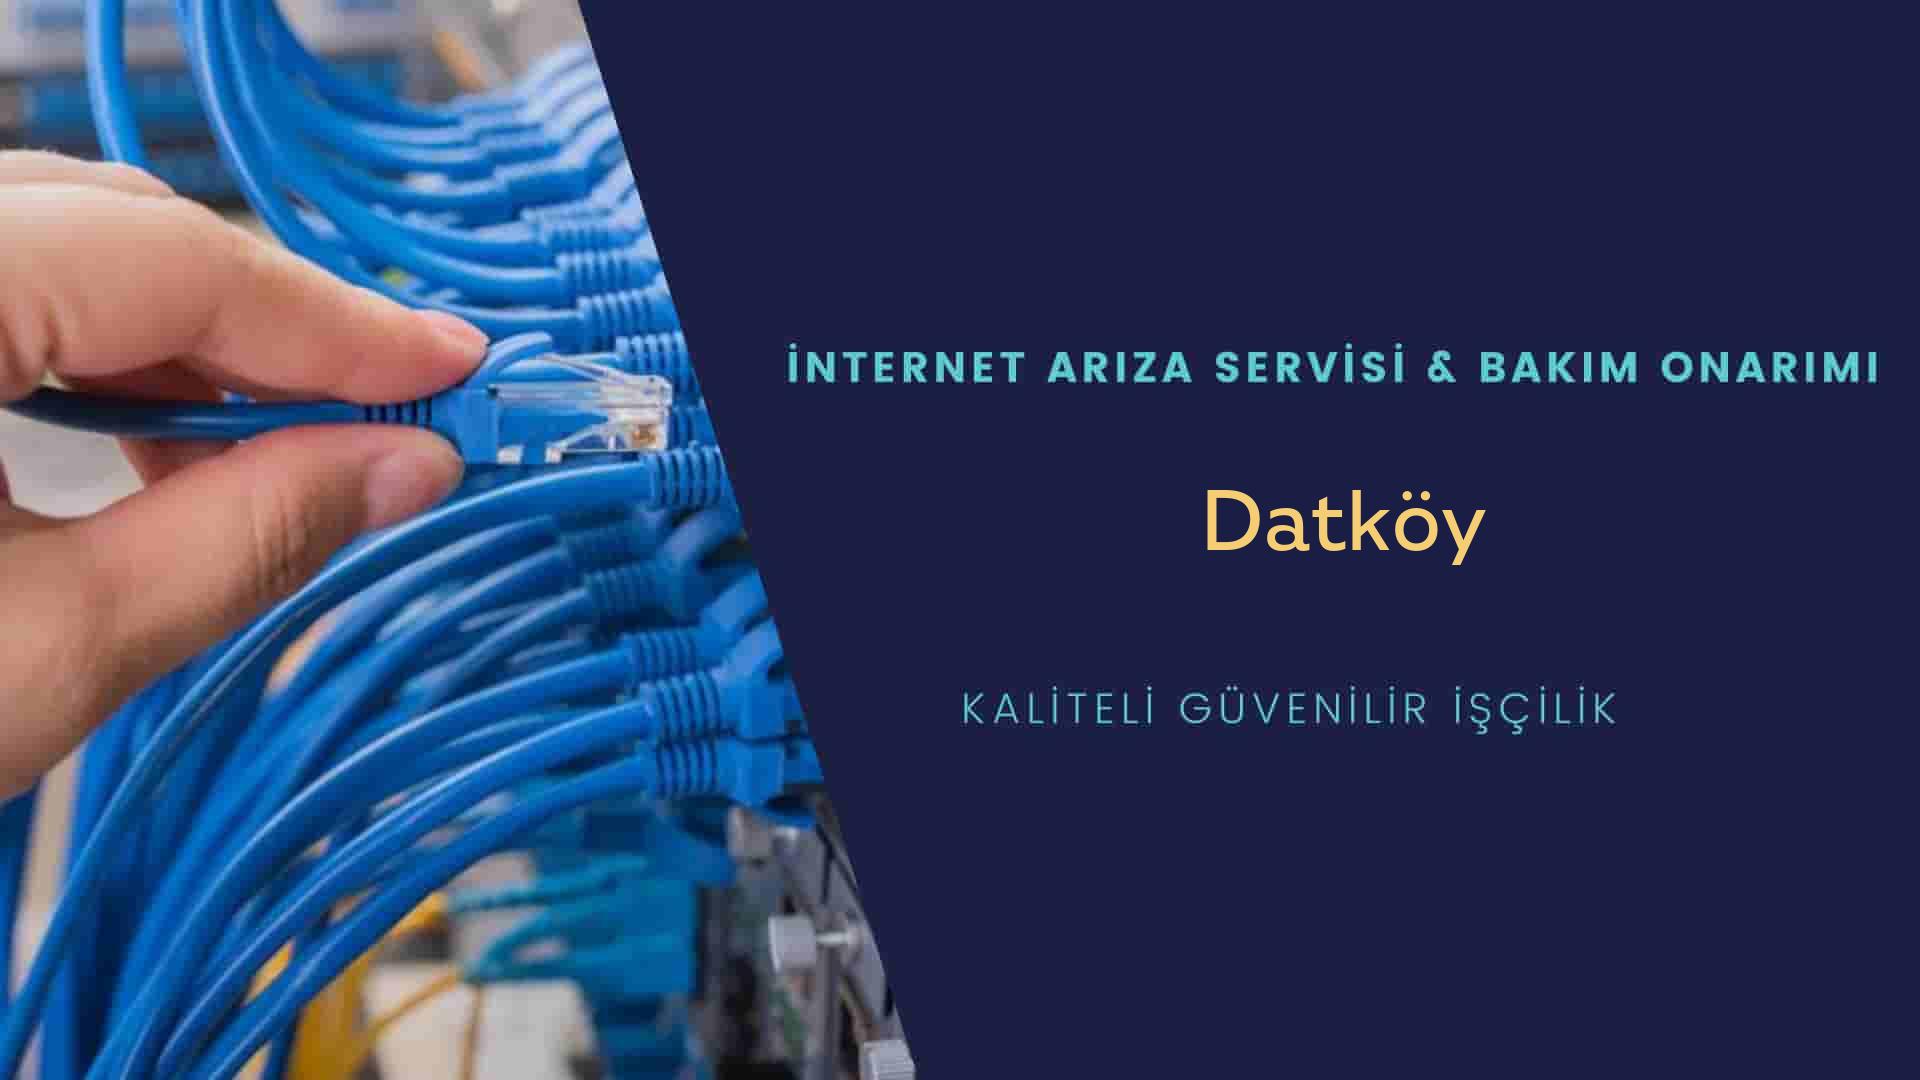 Datköy internet kablosu çekimi yapan yerler veya elektrikçiler mi? arıyorsunuz doğru yerdesiniz o zaman sizlere 7/24 yardımcı olacak profesyonel ustalarımız bir telefon kadar yakındır size.